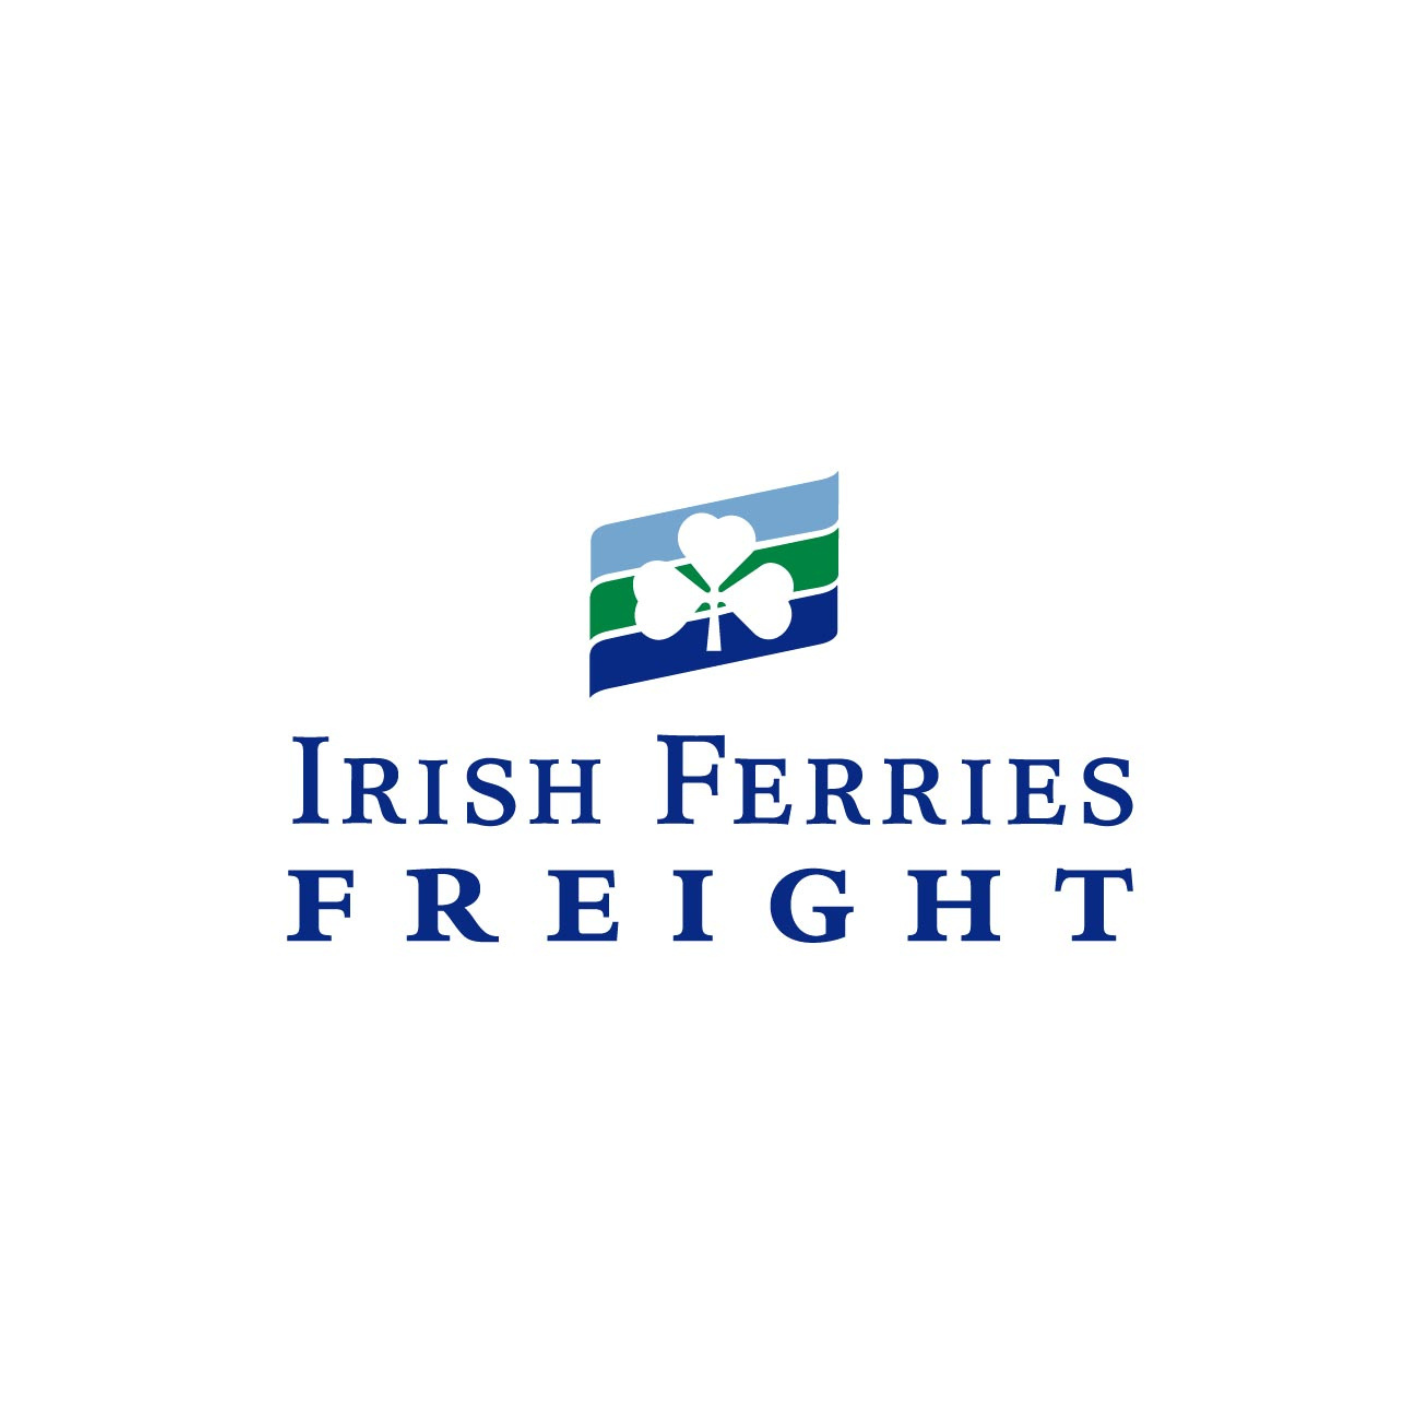 Irish-ferriers-freight